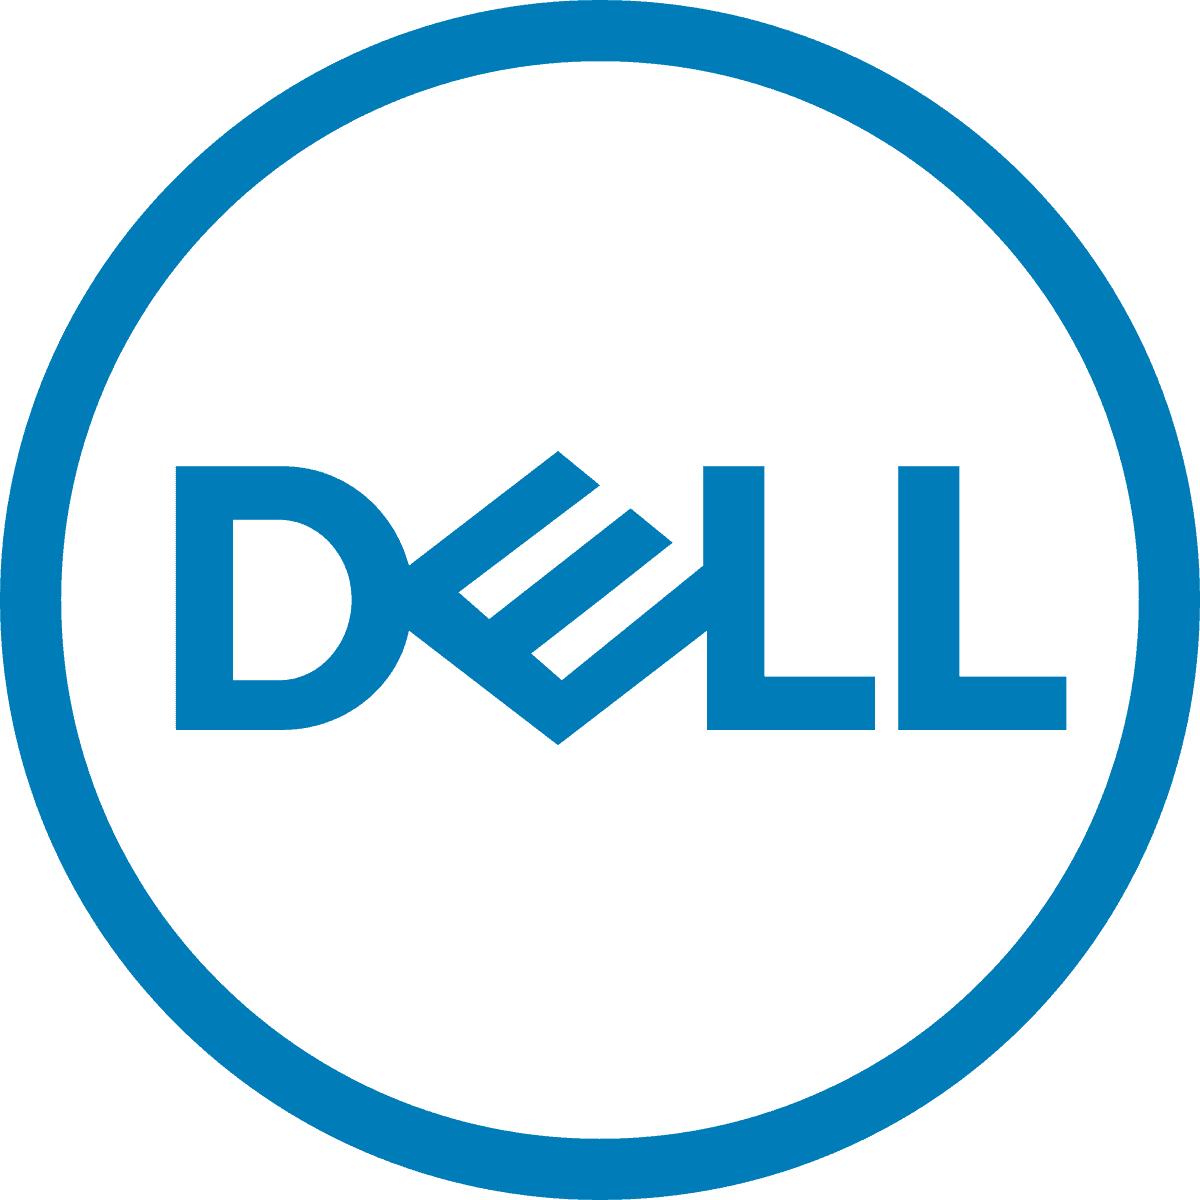 Dell India